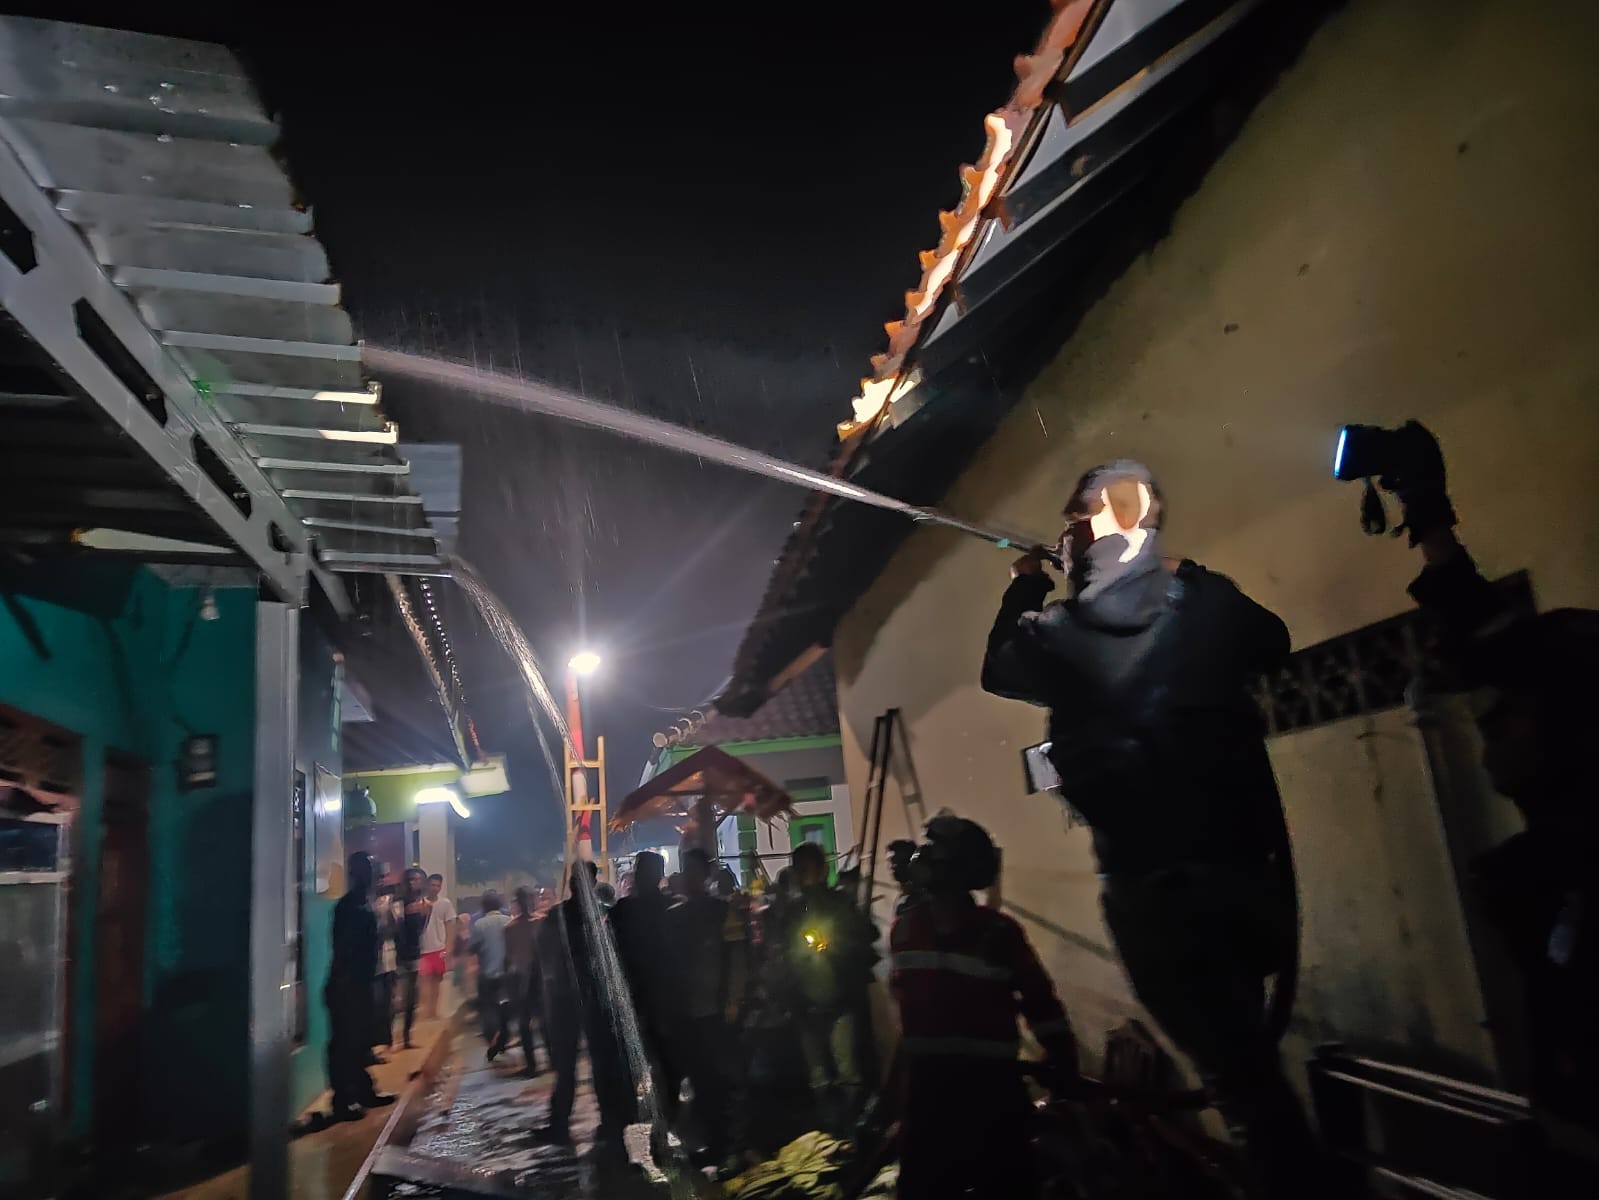 Rumah Terbakar di Desa Mekarmukti, Kabupaten Kuningan: Penghuni Selamat, Kerugian Mencapai Rp165 Juta